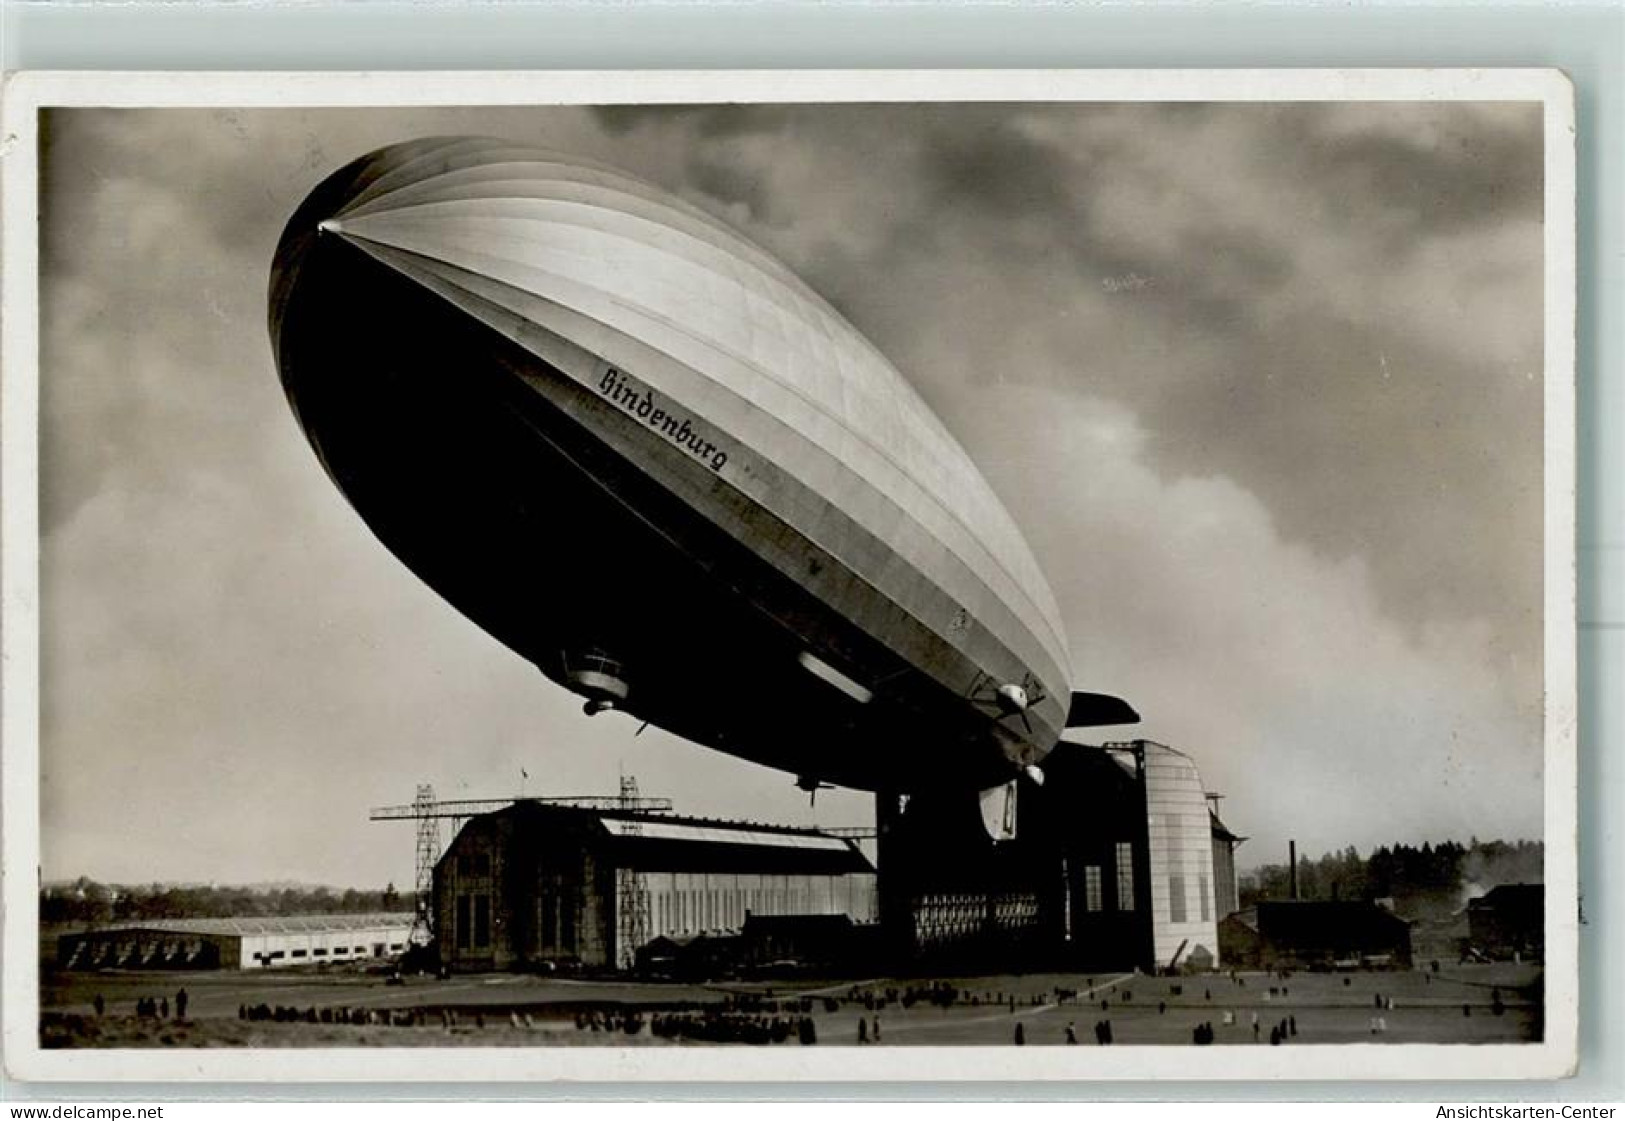 13225907 - Aufstieg LZ 129 Hindenburg AK - Dirigeables